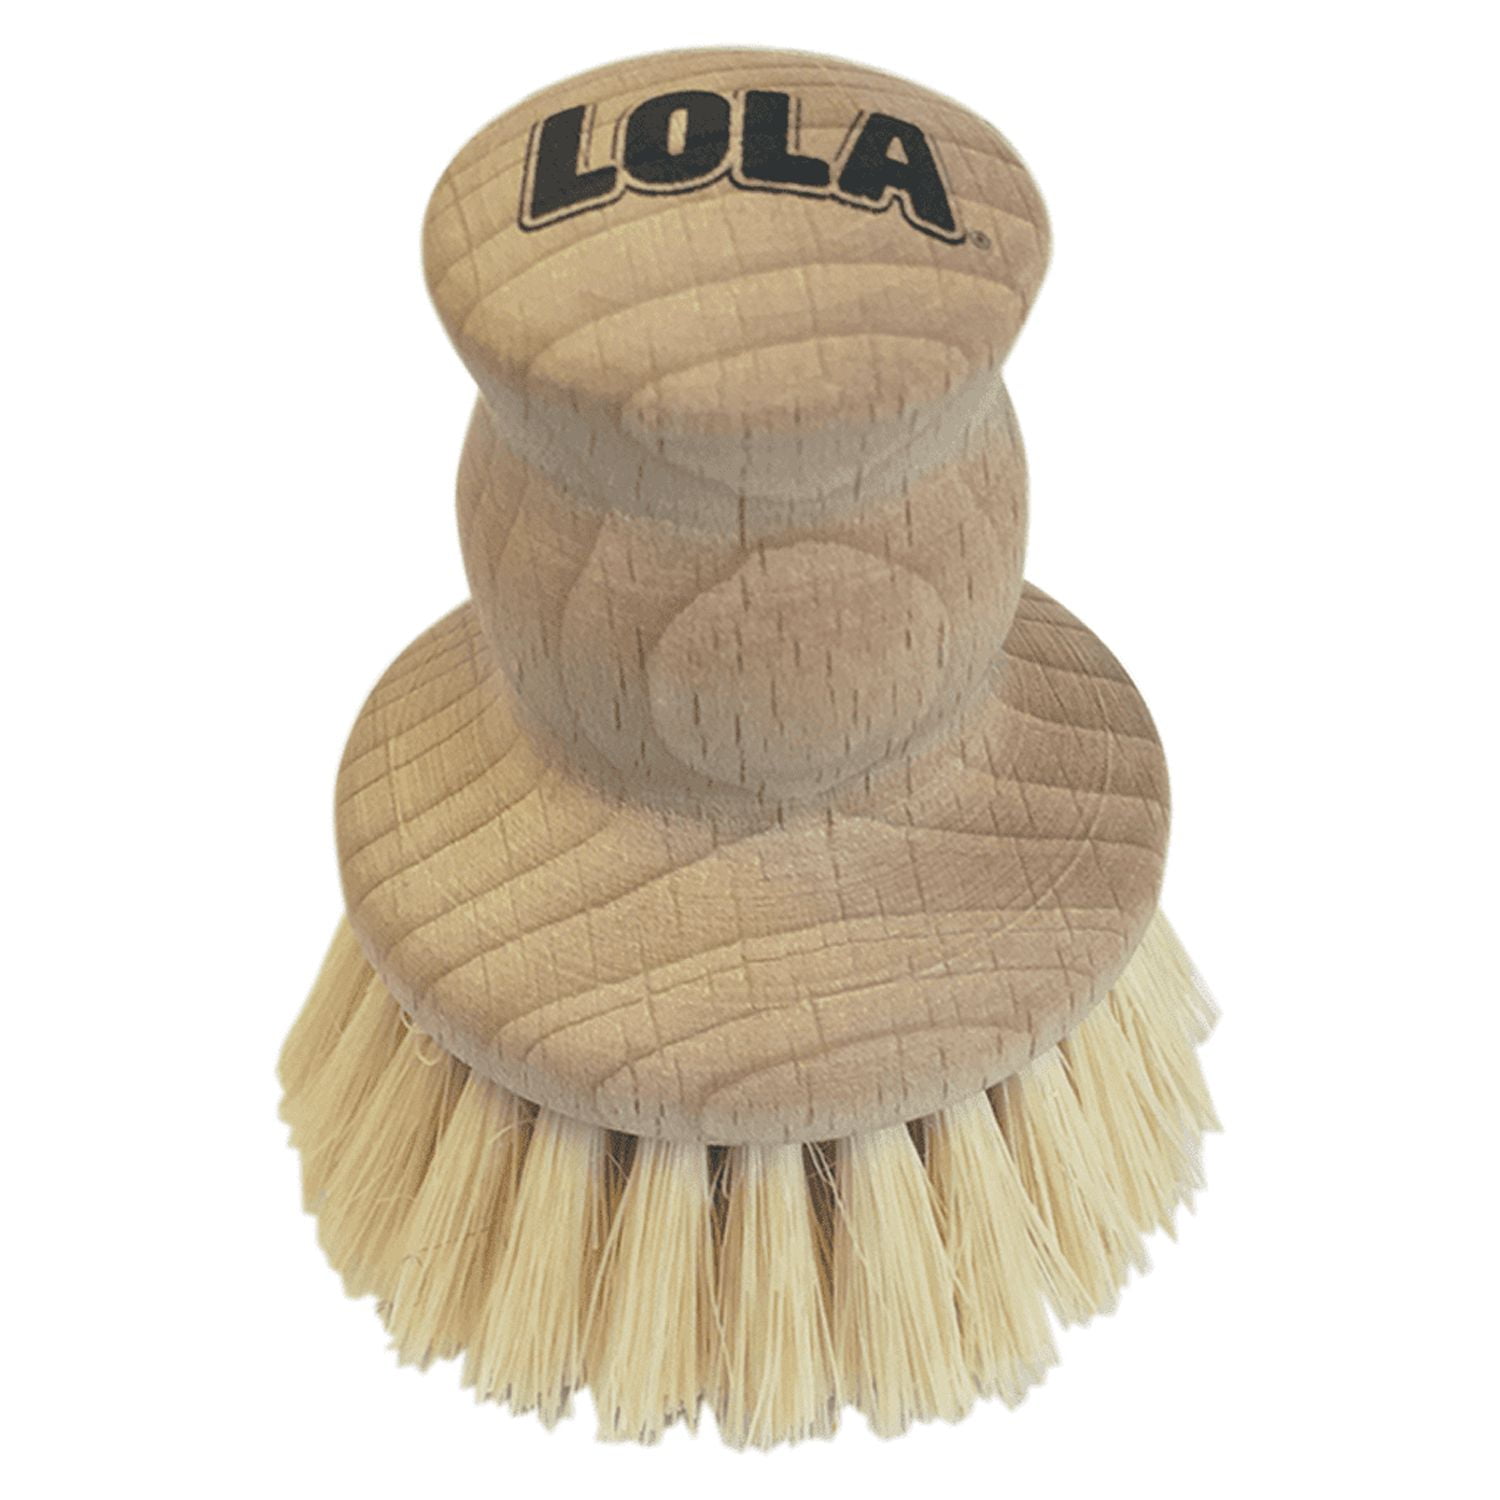 LOLA The Original Dishwashing & Vegetable Brush W/ Wood Handle